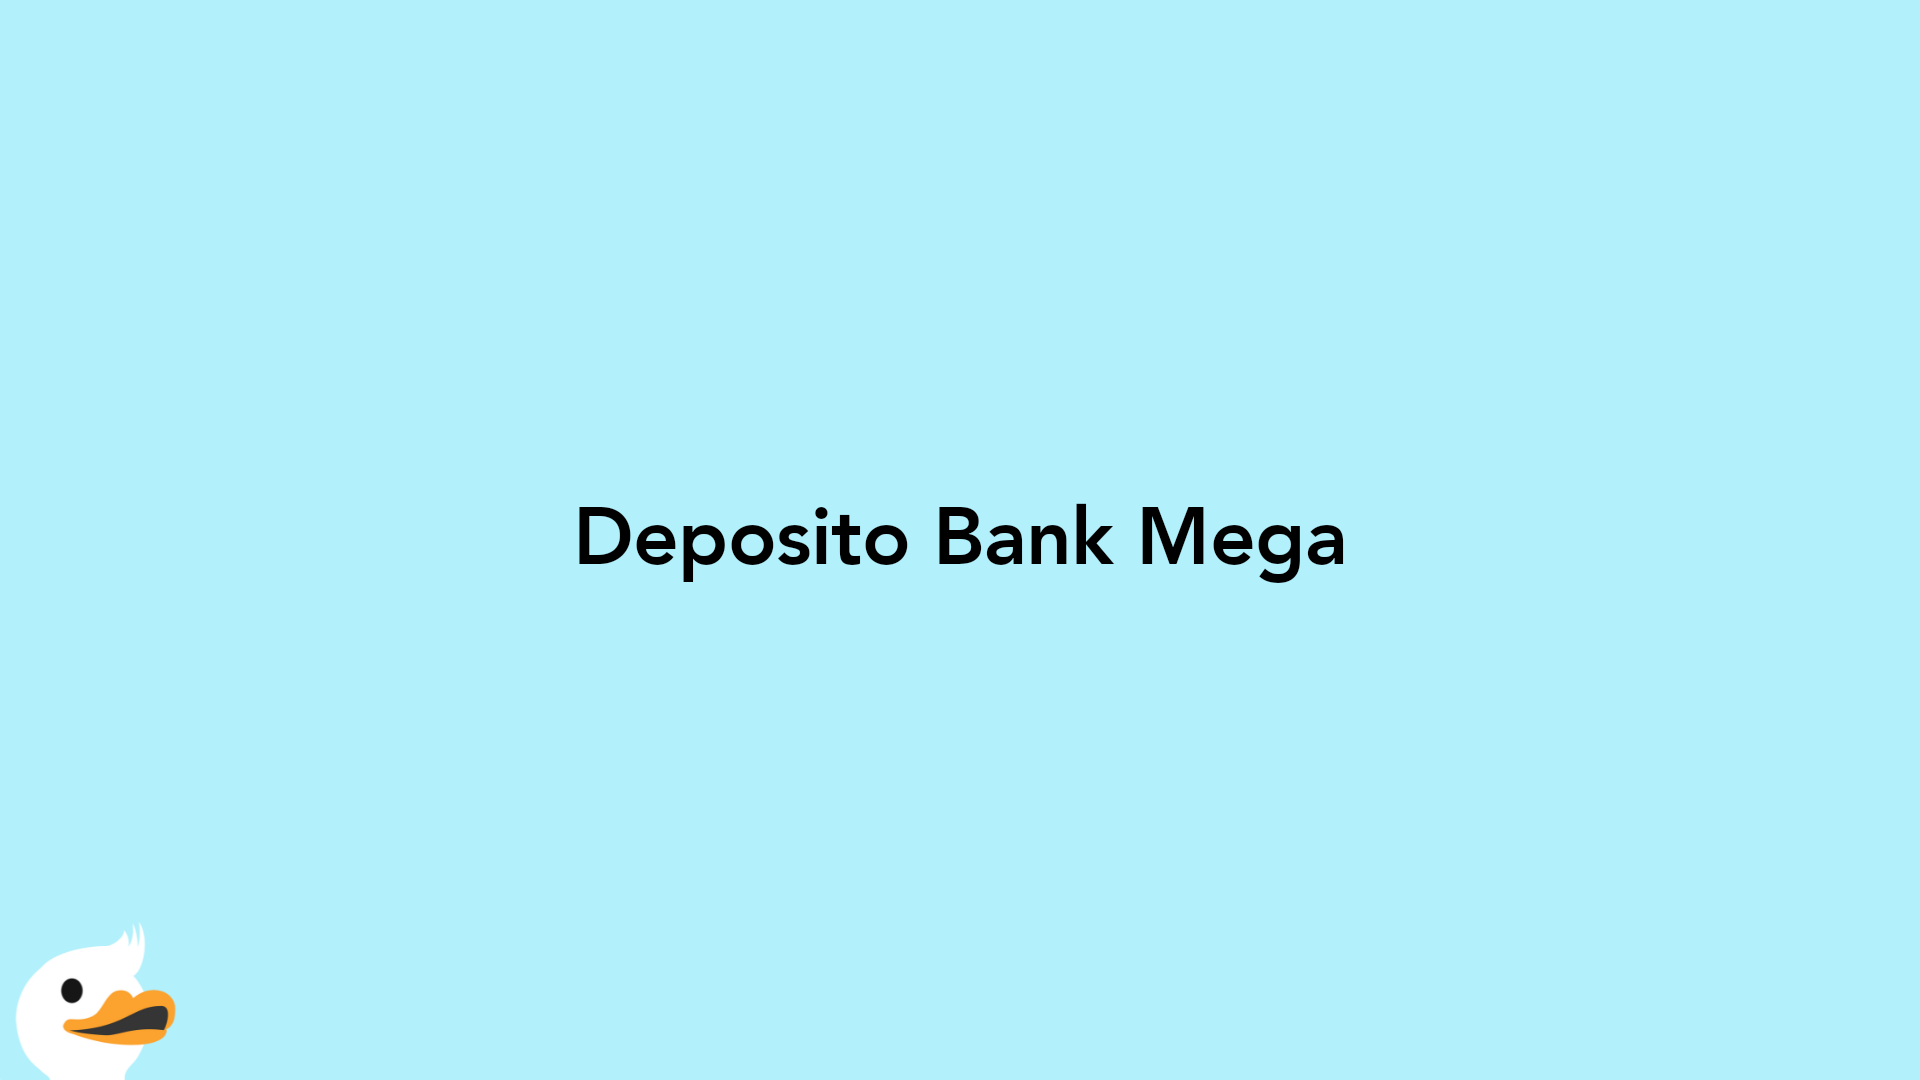 Deposito Bank Mega